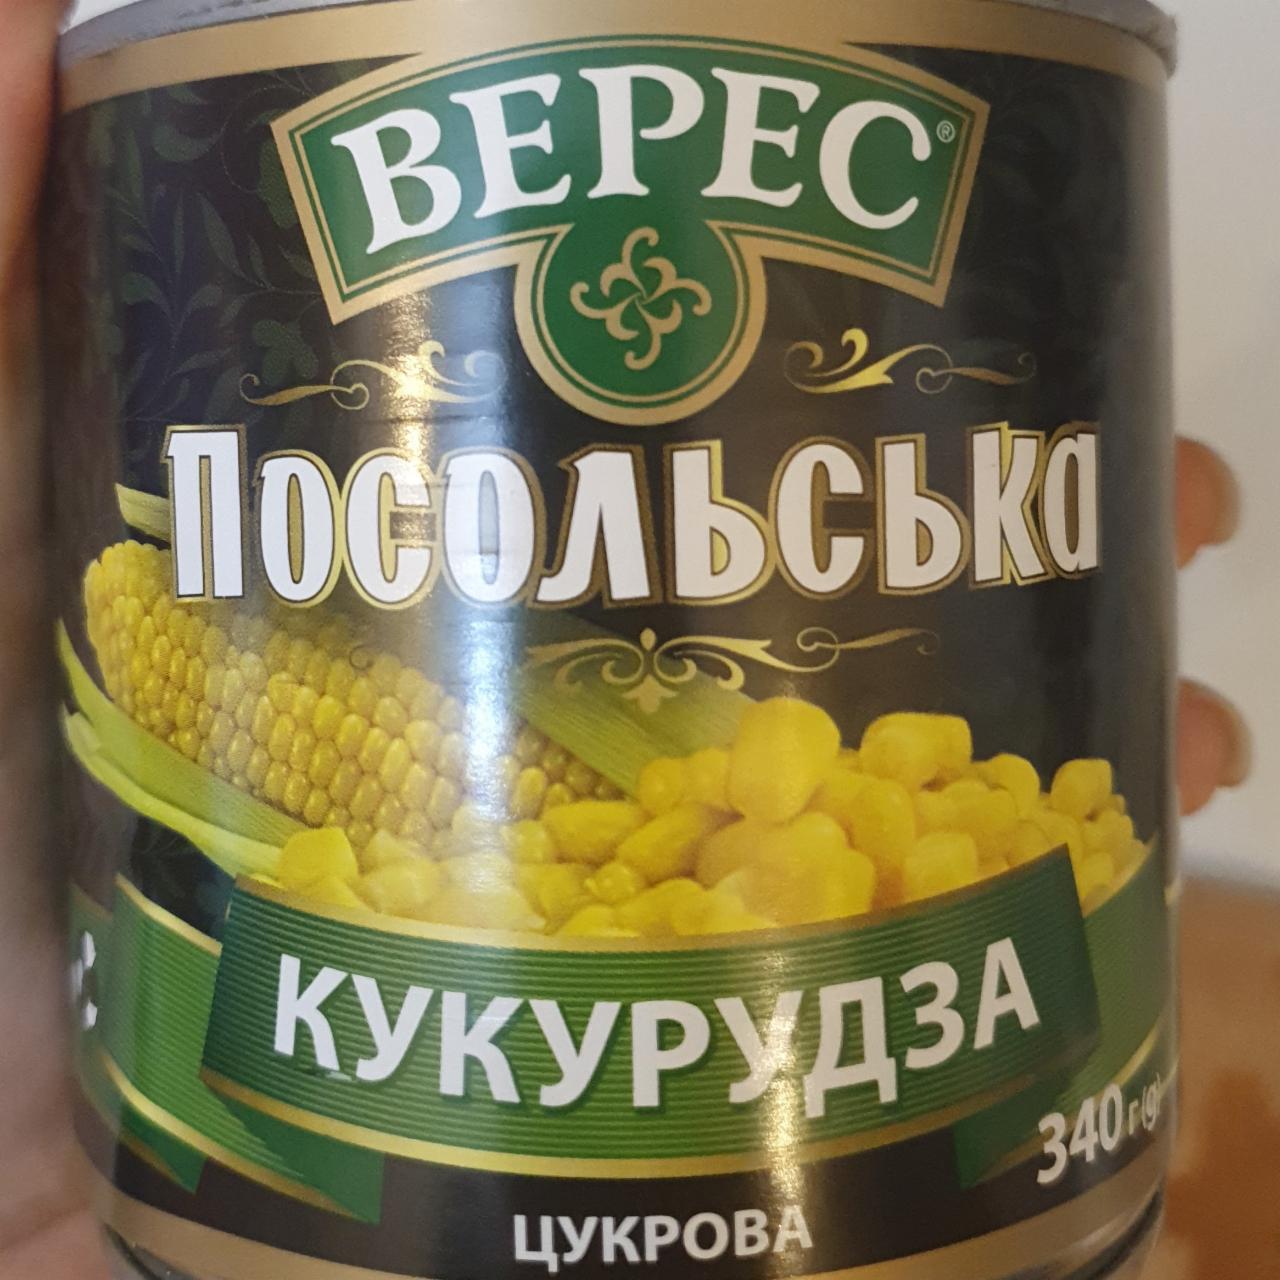 Фото - Кукурудза цукрова консервована з цілих зерен Посольська Верес